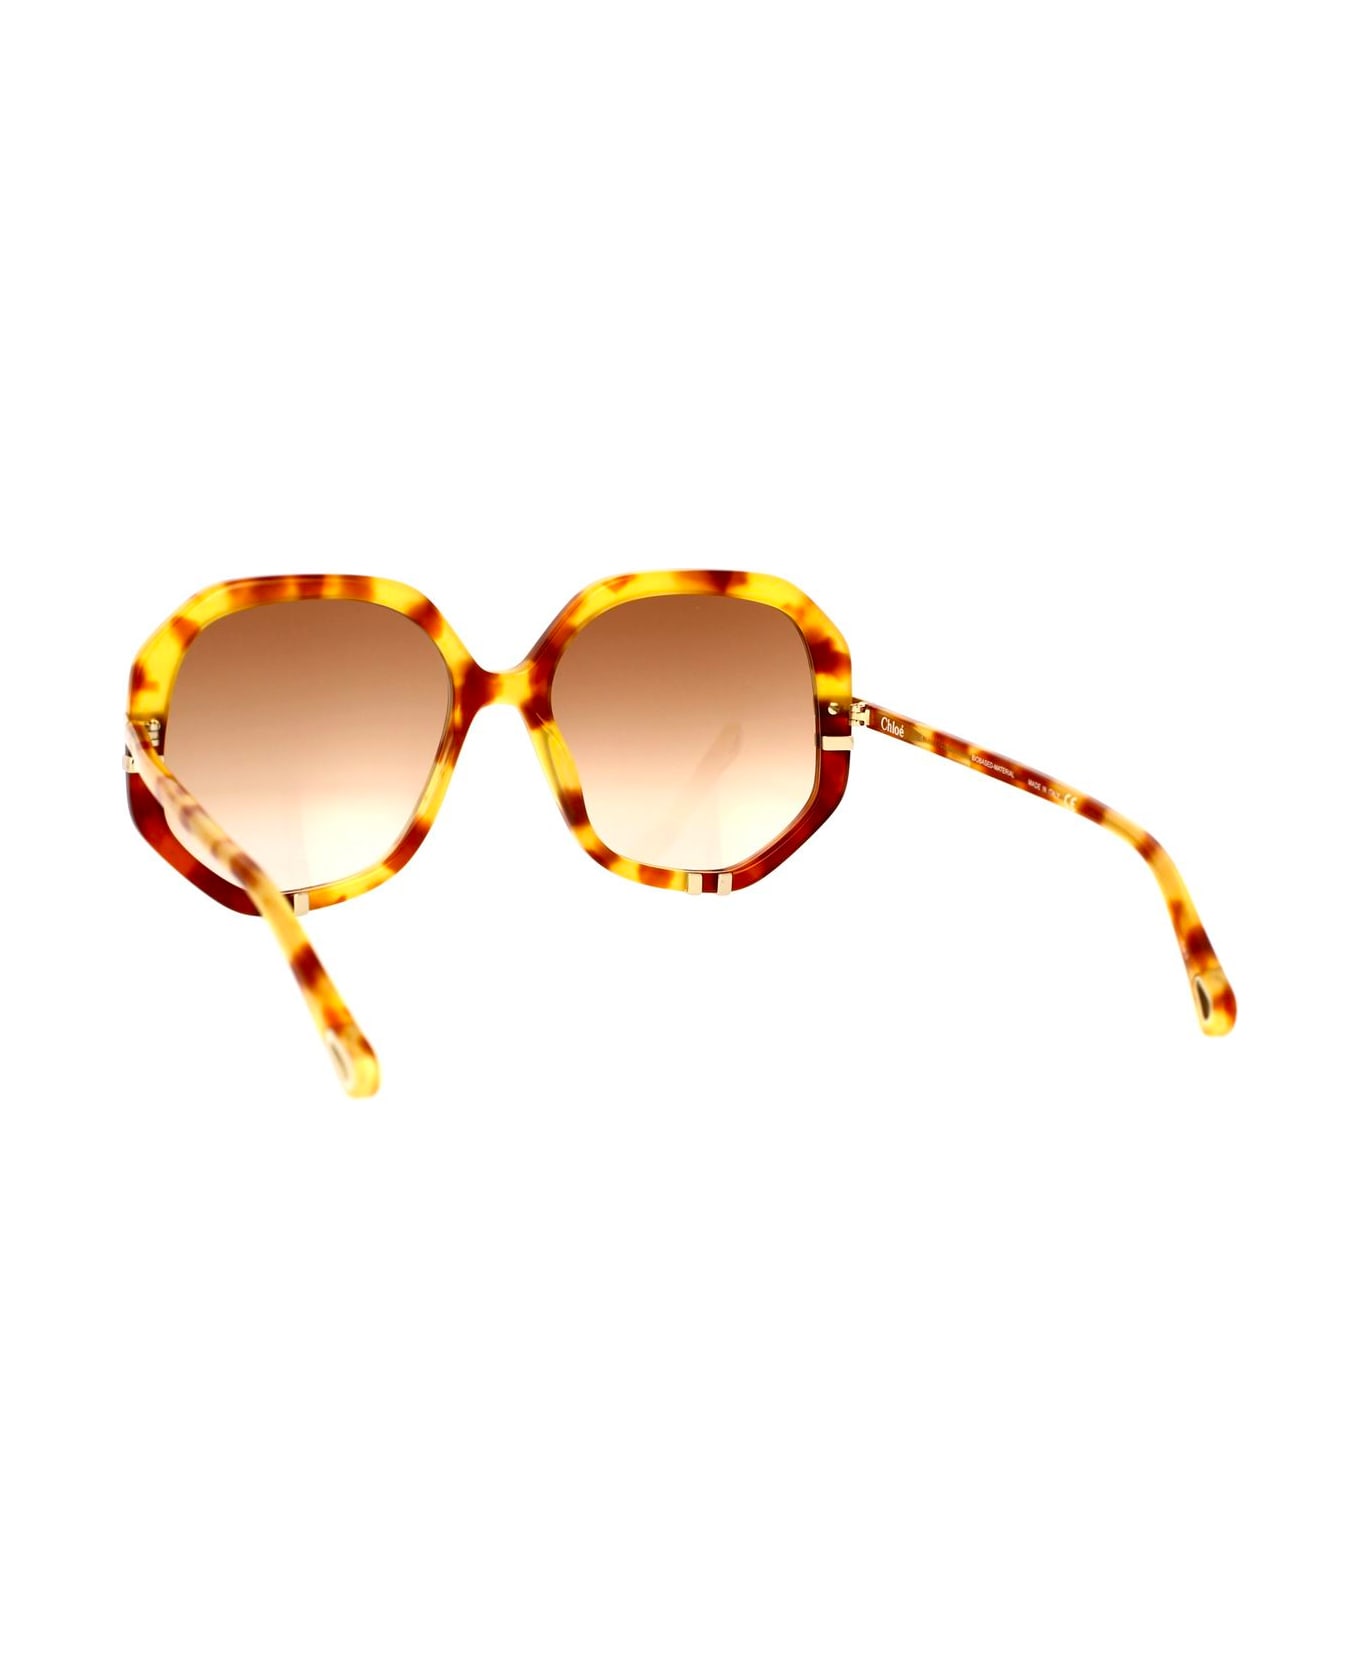 Chloé Havana/brown West Sunglasses - Brown